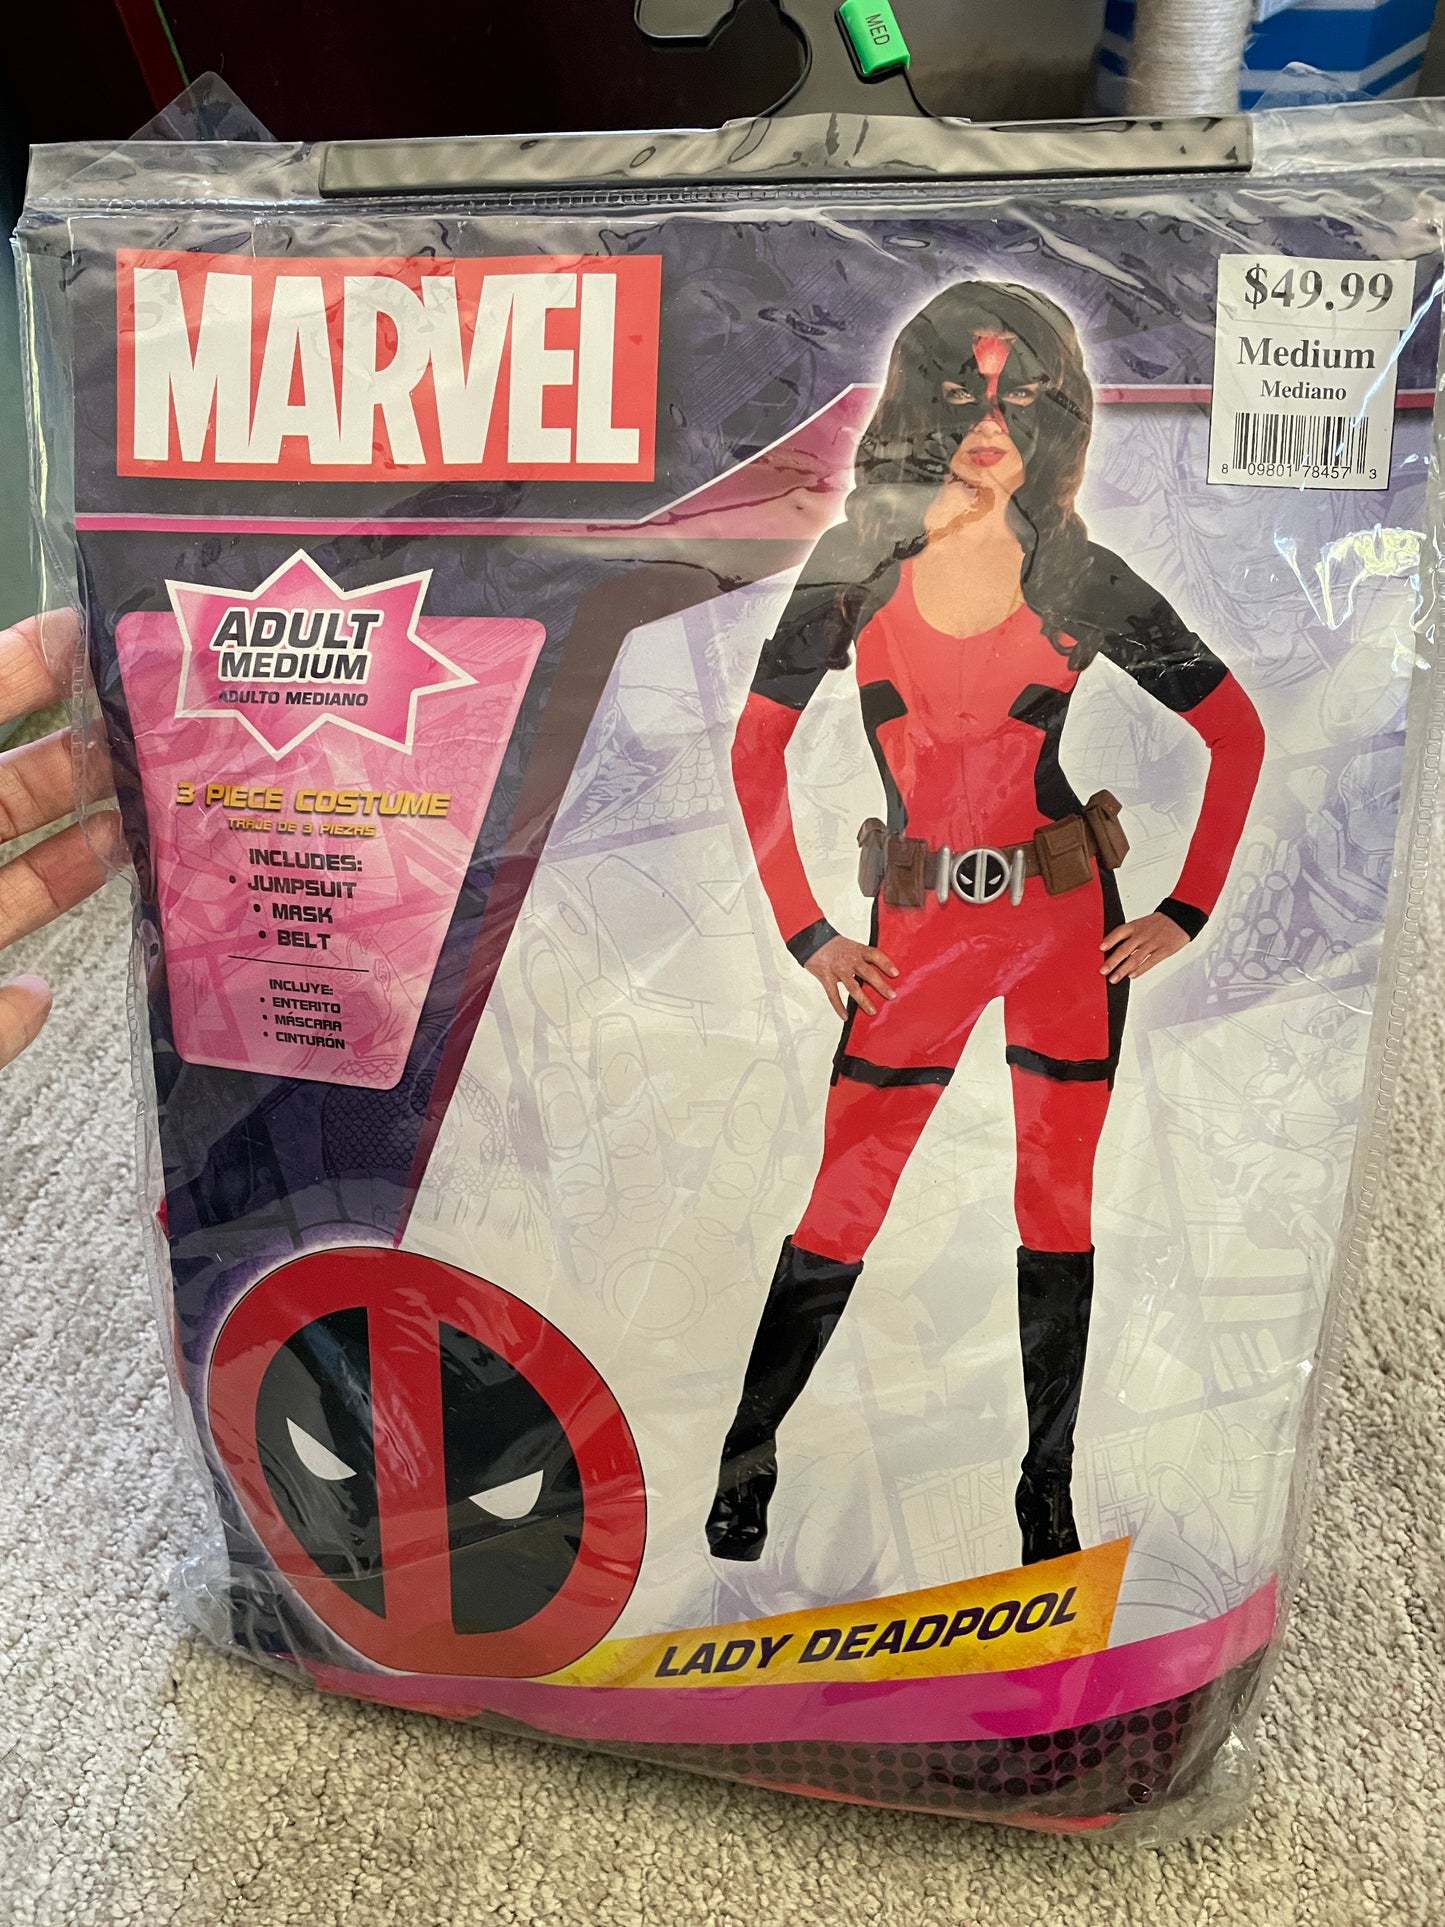 Marvel Lady Deadpool costume